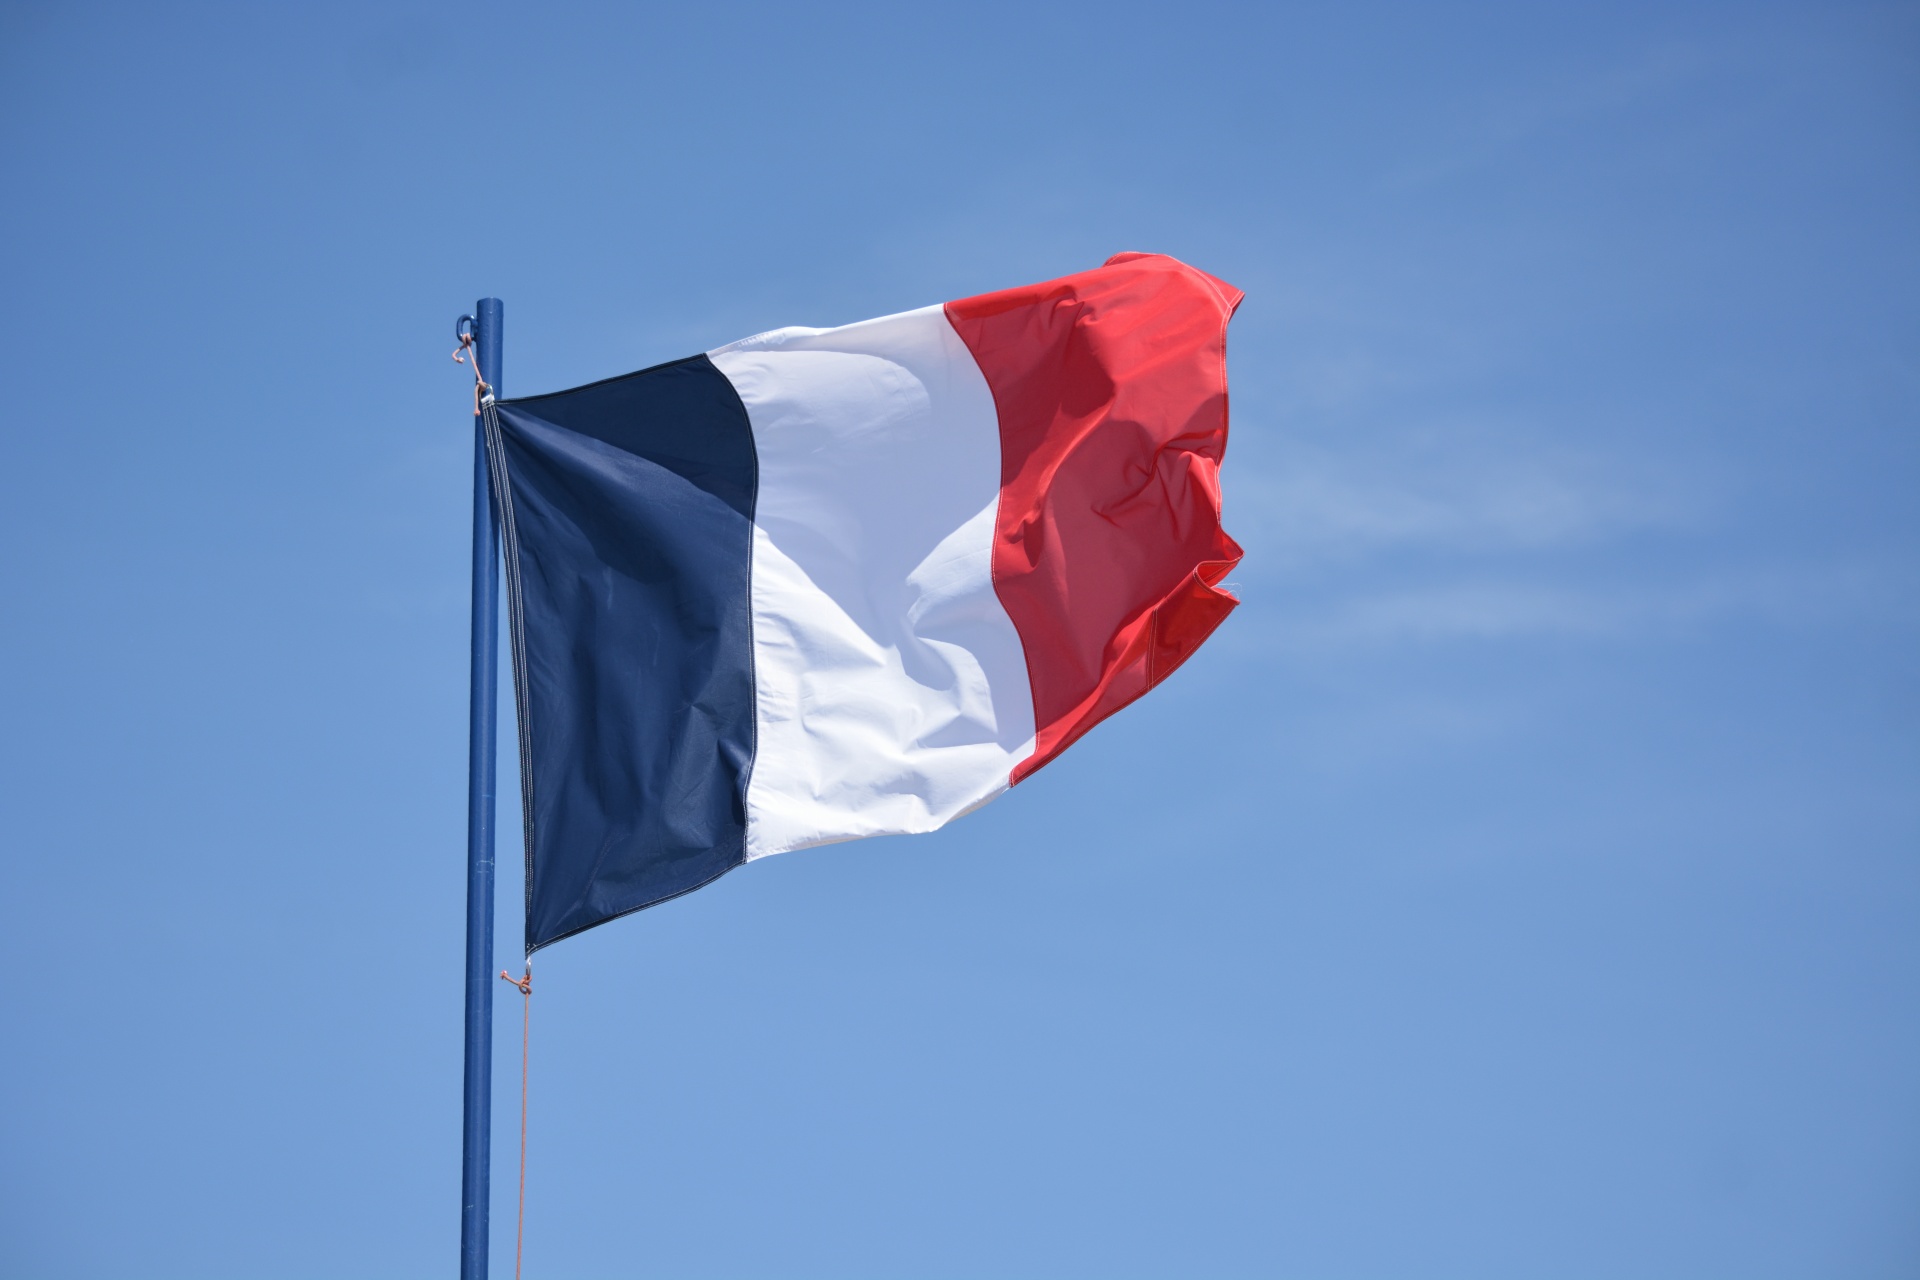 Francia bandiera 1920x1080 20200508 001 v2